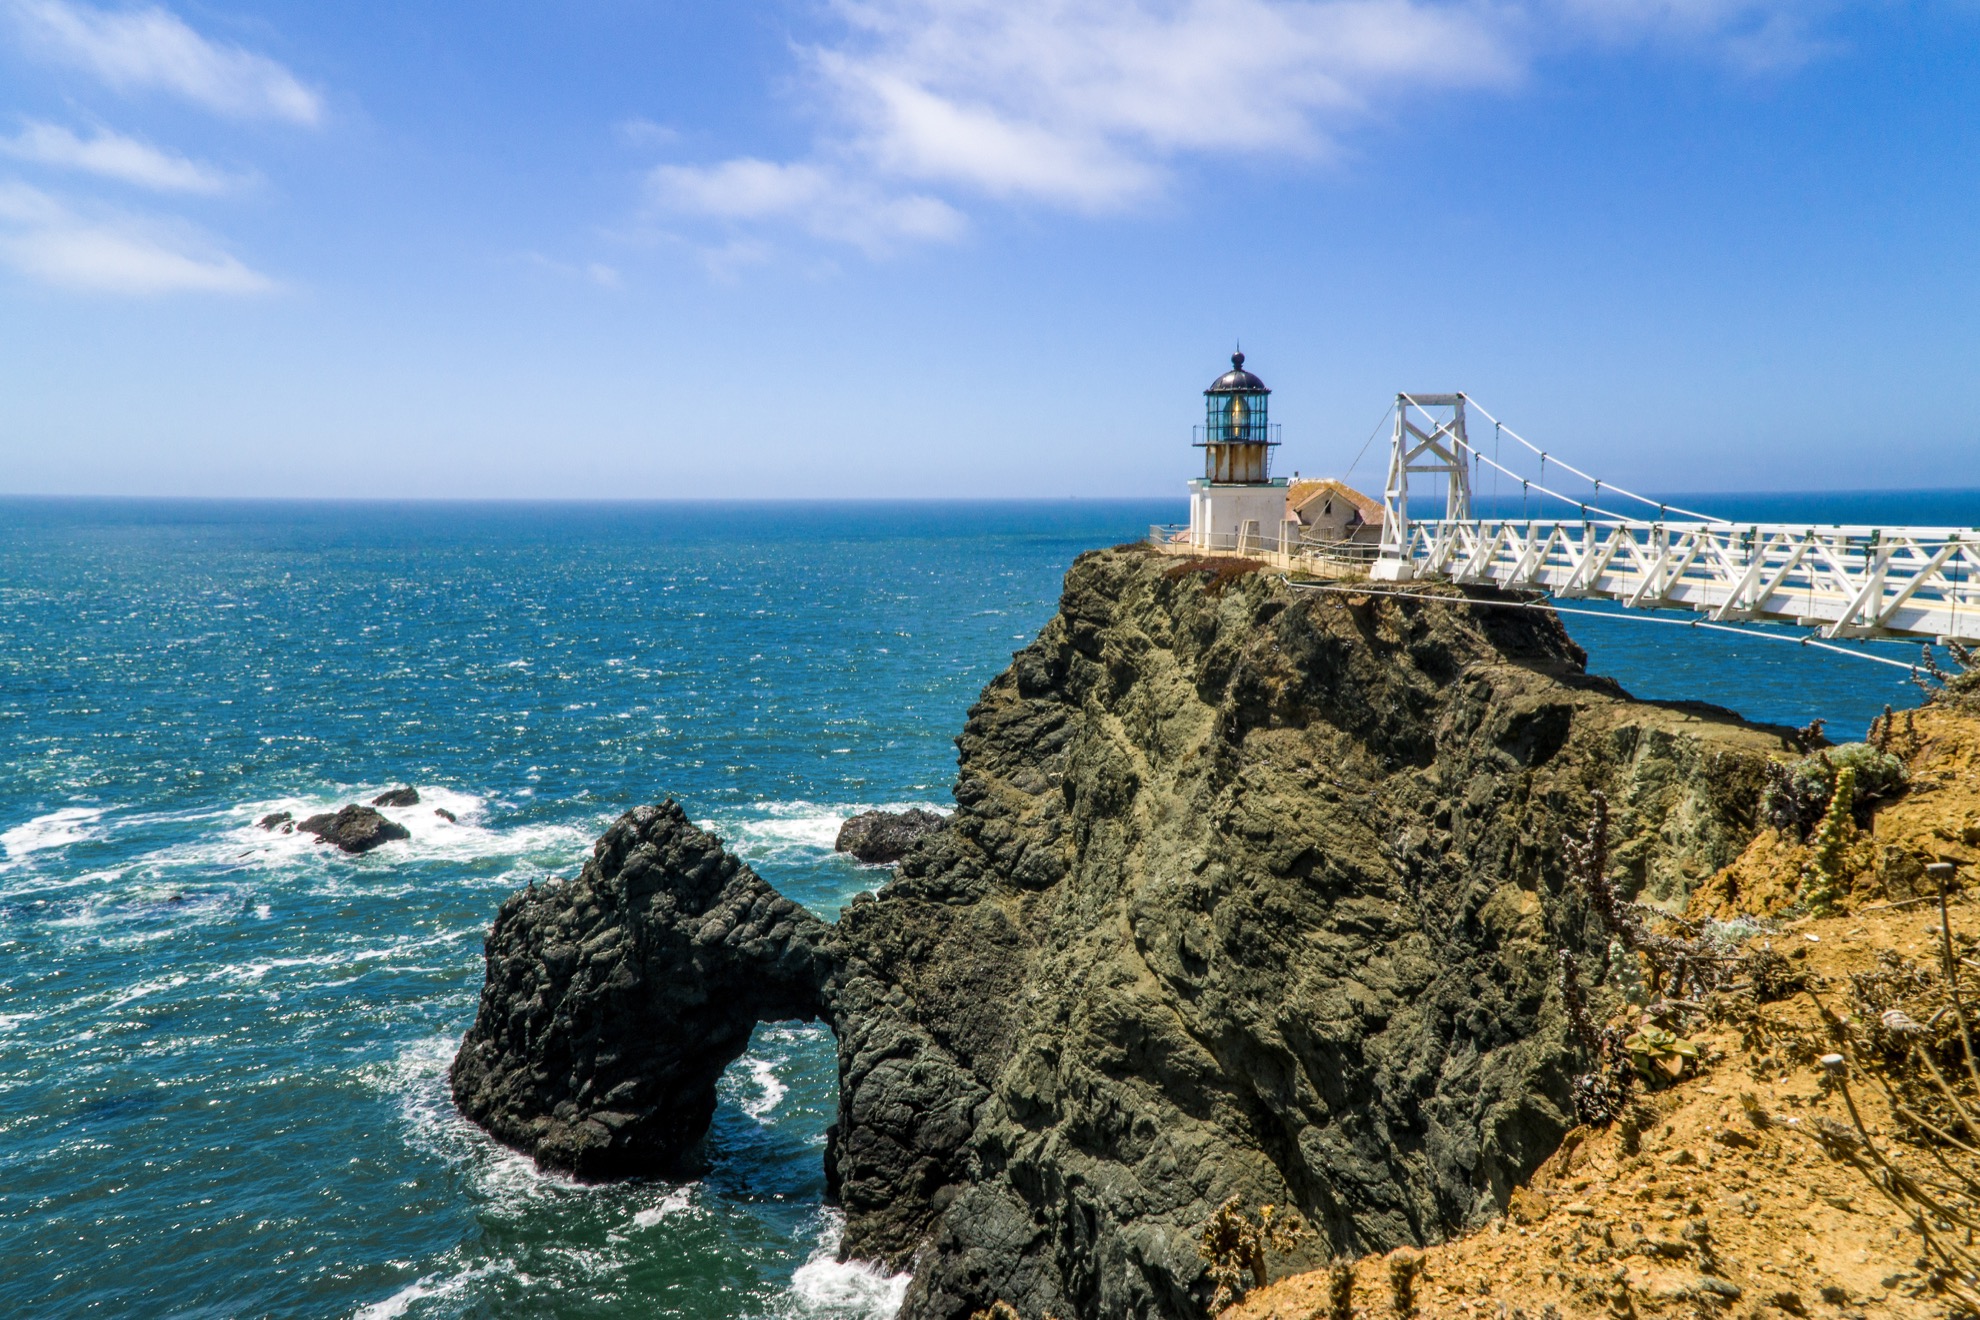 Visitando el Marin Headlands de Marin de San Francisco: 9 cosas que saber - 9